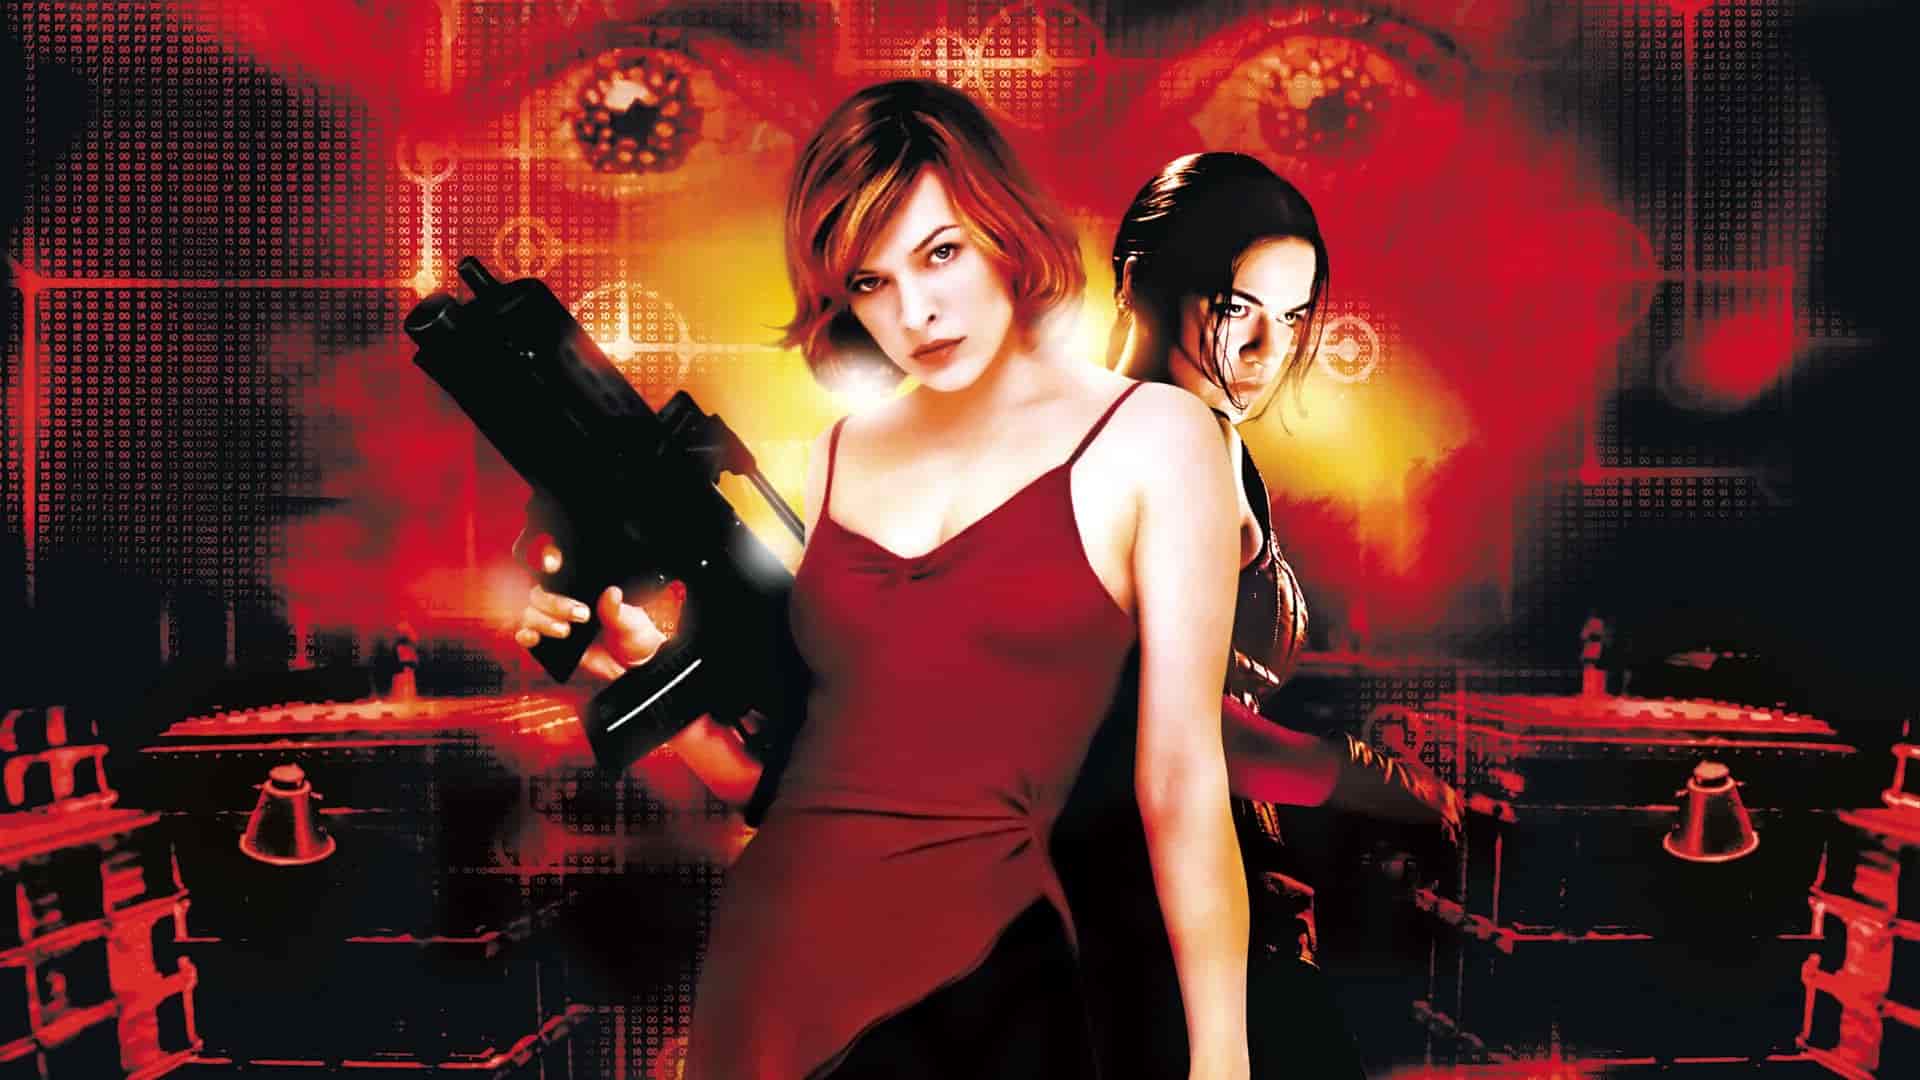 دانلود فیلم Resident Evil 2002